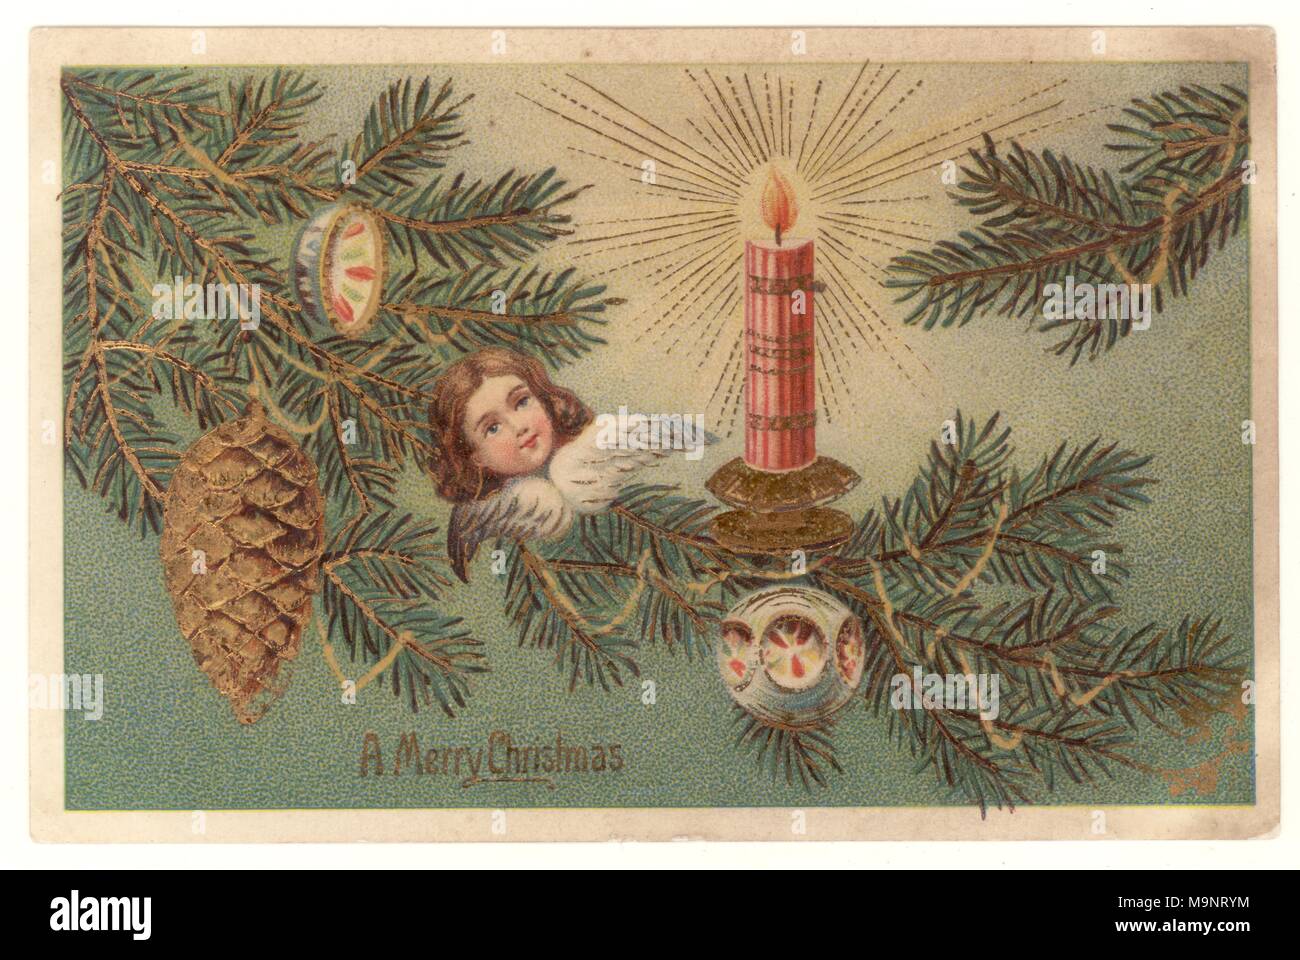 Edwardian i Saluti di Natale cartolina, raffigurante un albero di Natale con decorazioni che desiderano un Buon Natale, pubblicato 23 Dic 1906 Foto Stock